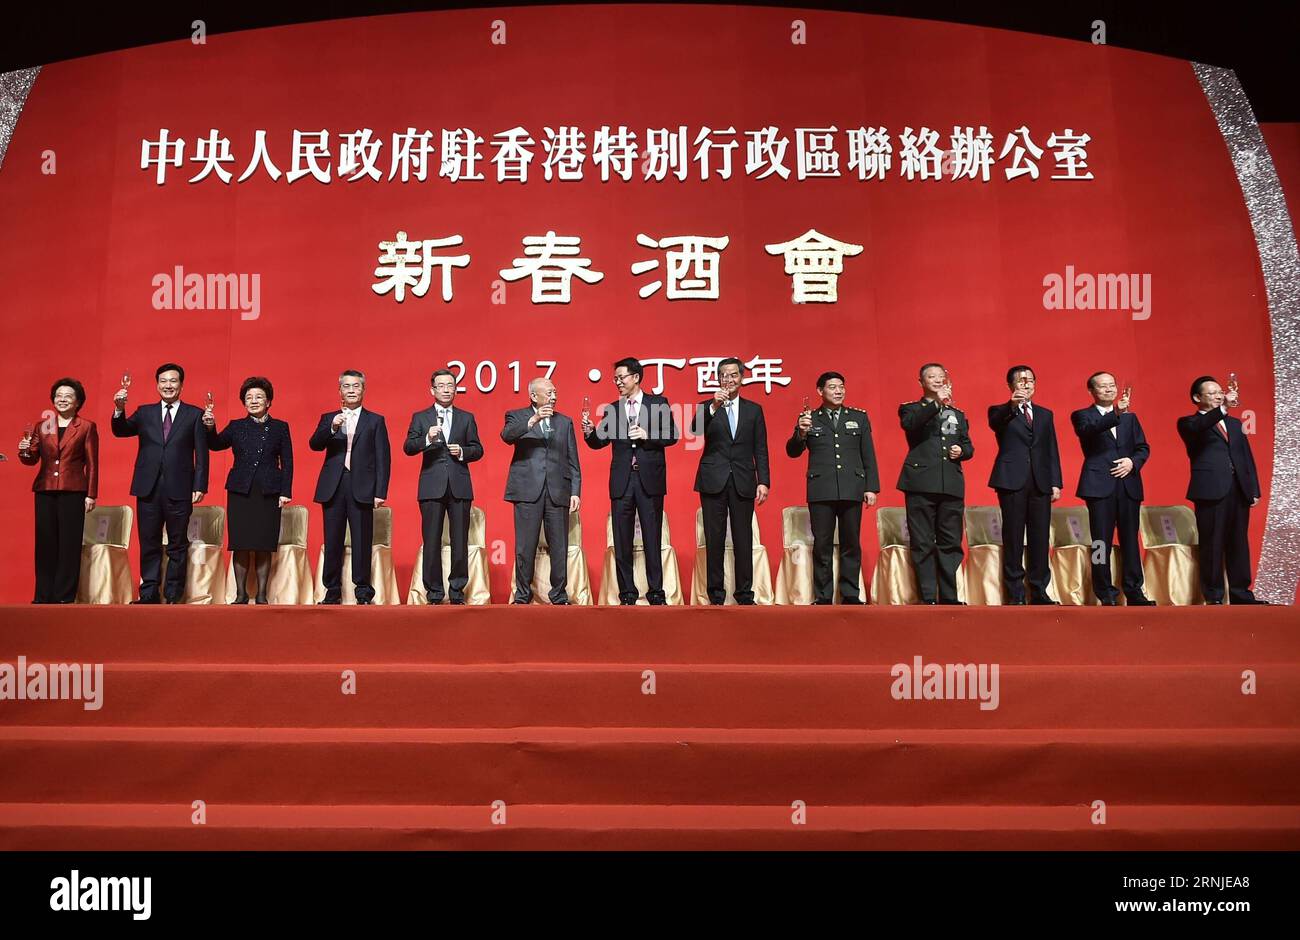 (170119) -- HONG KONG, 19 de enero de 2017 -- Invitados honorables asisten a una reunión del Festival de Primavera llevada a cabo por la Oficina de Enlace del Gobierno Popular Central Chino en Hong Kong en el Centro de Convenciones y Exposiciones en Hong Kong, sur de China, 19 de enero de 2017. ) (Zyd) CHINA-HONG KONG-LIAISON OFFICE-GATHERING (CN) WangxShen PUBLICATIONxNOTxINxCHN HONG KONG ENE 19 2017 Invitados honoríficos asisten a un héroe de reunión del festival de primavera por la Oficina de Enlace del Gobierno Central de Celebridades Chinas en Hong Kong en el Centro de Convenciones y Exposiciones en Hong Kong Sur de China Ene 19 2017 ZYD China Hong Kong Foto de stock